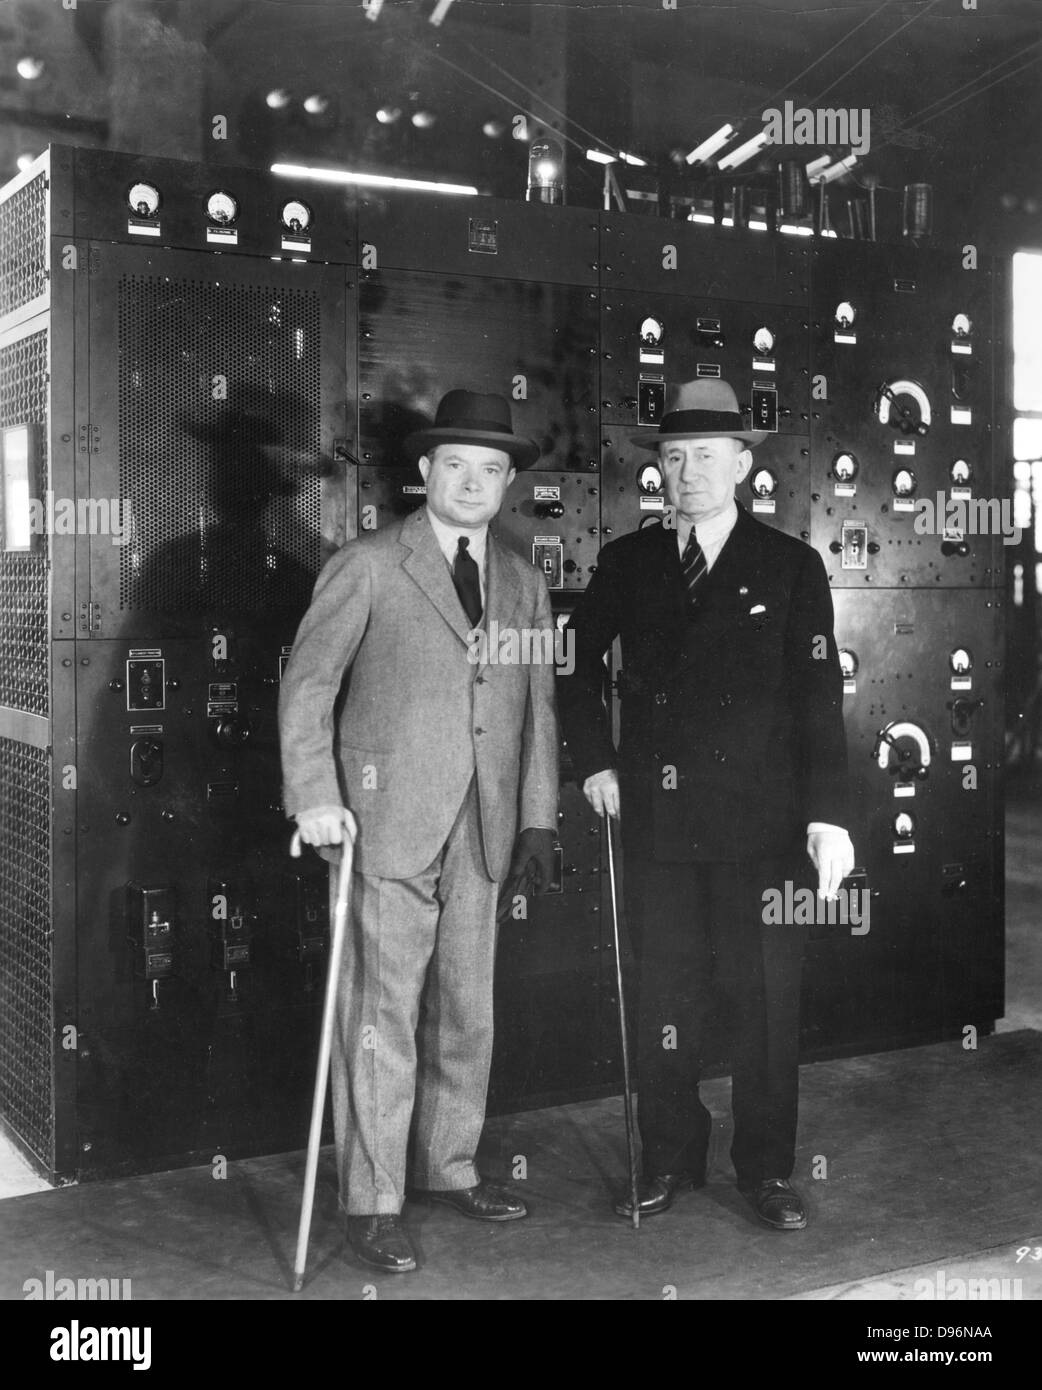 Guglielmo Marconi (1874-1937), pionnier de la radio italienne, droit et David Sarnoff (1891-1971) américain d'origine russe, pionnier de la radio et de la télévision, à la radio de RCA 'Central', Riverhead, Long Island, New York, 1933. Photographie Banque D'Images